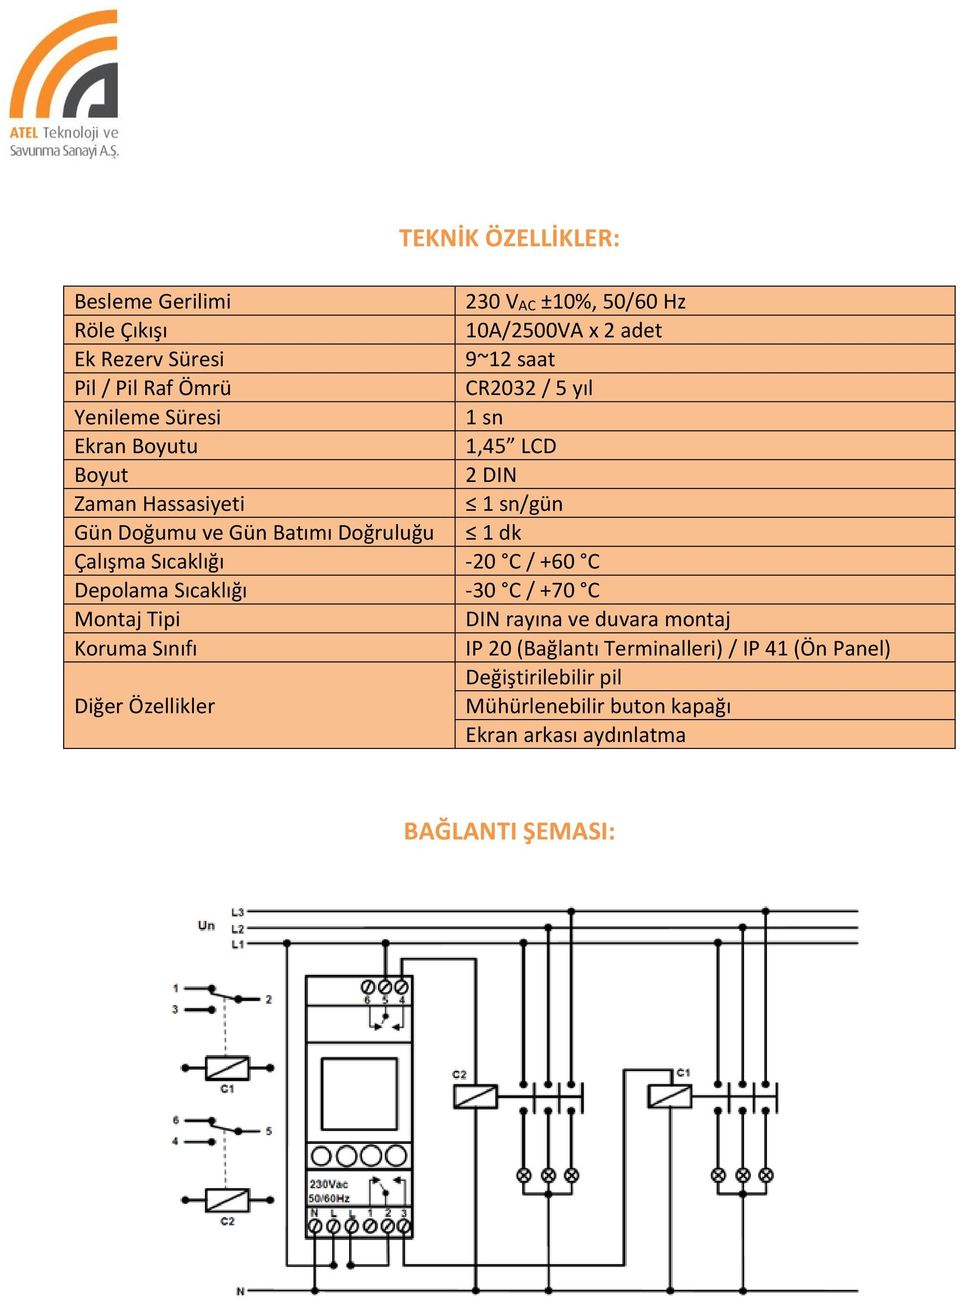 Çalışma Sıcaklığı -20 C / +60 C Depolama Sıcaklığı -30 C / +70 C Montaj Tipi DIN rayına ve duvara montaj Koruma Sınıfı IP 20 (Bağlantı